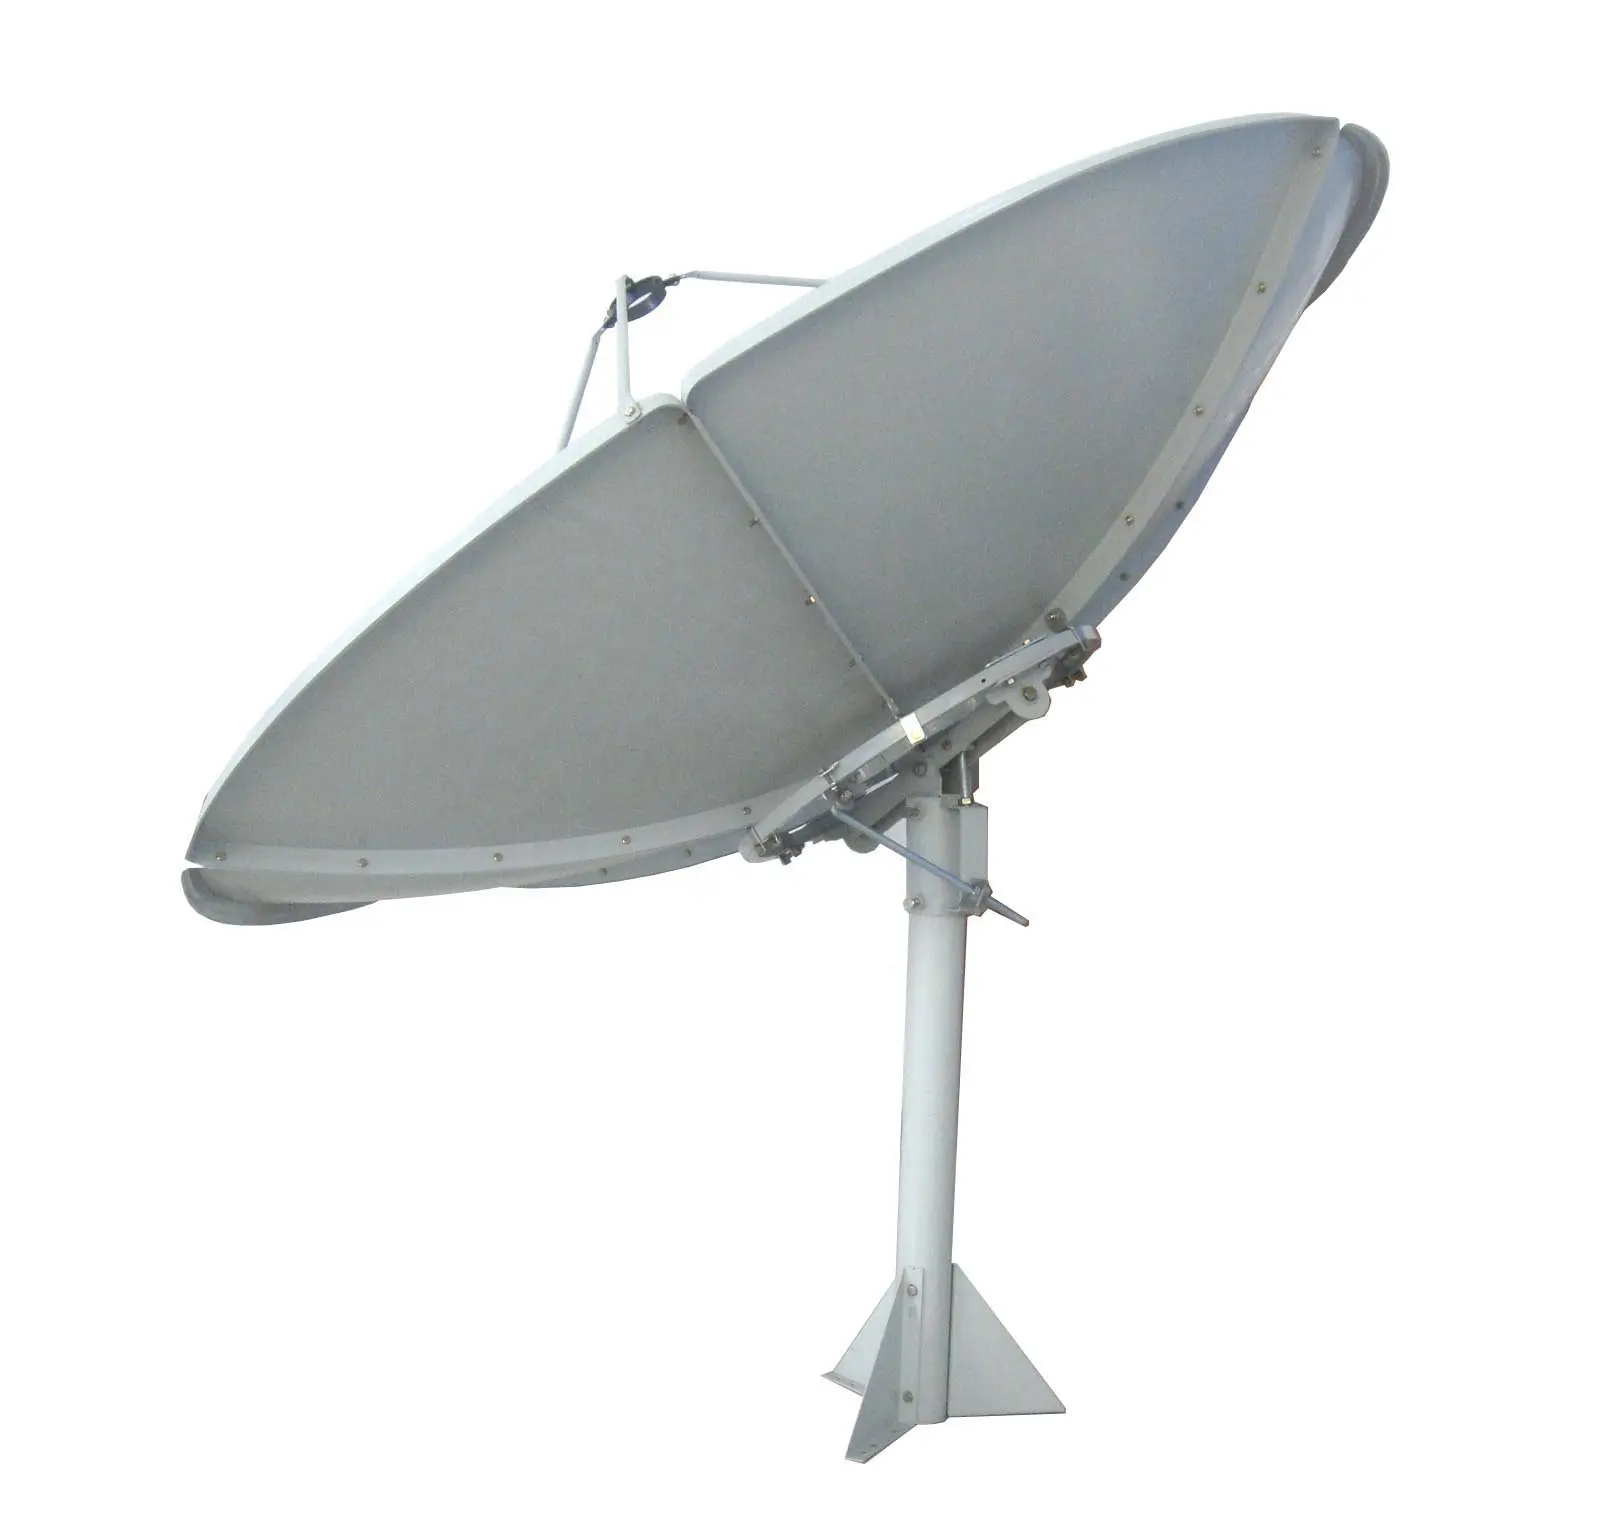 Cバンド180cm (6フィート) 極軸衛星ディッシュアンテナ